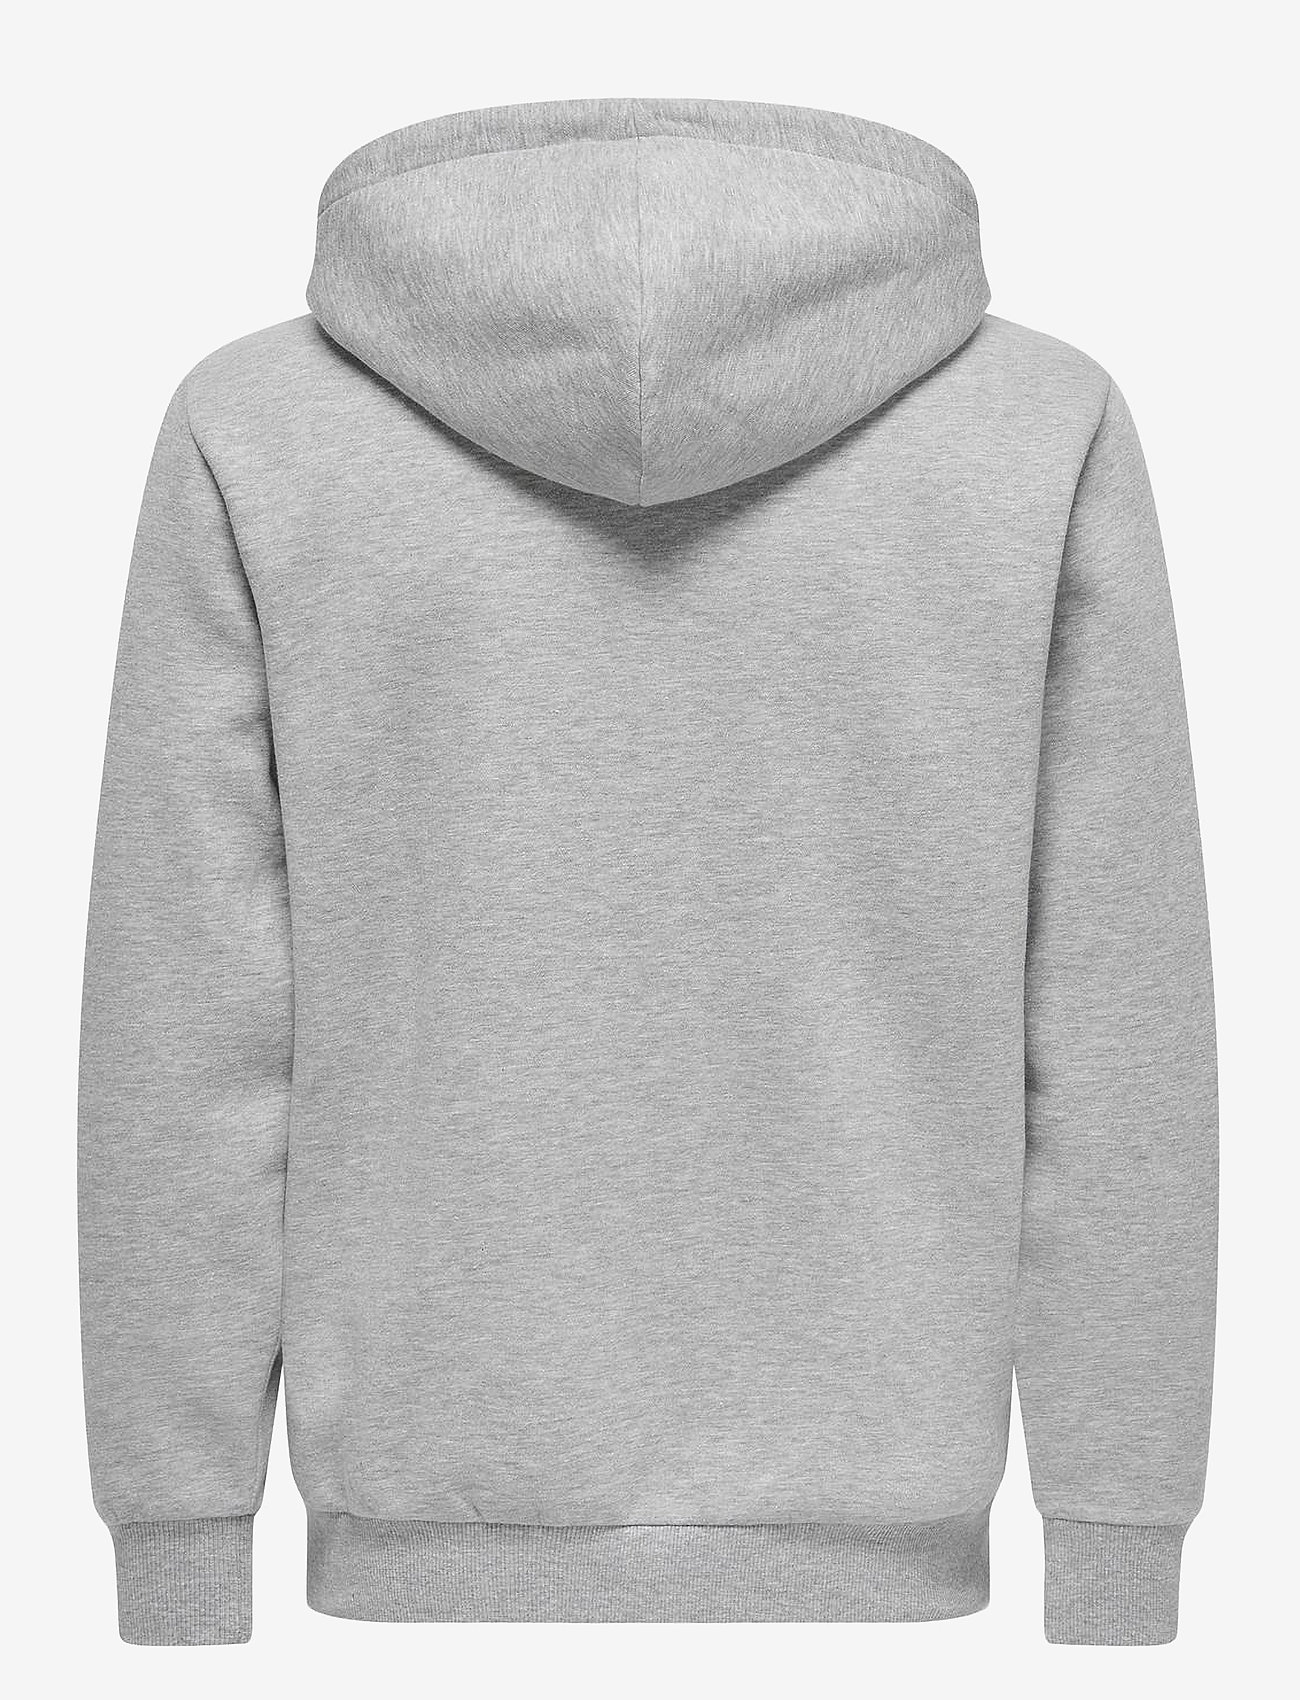 seek discomfort grey pullover hoodie